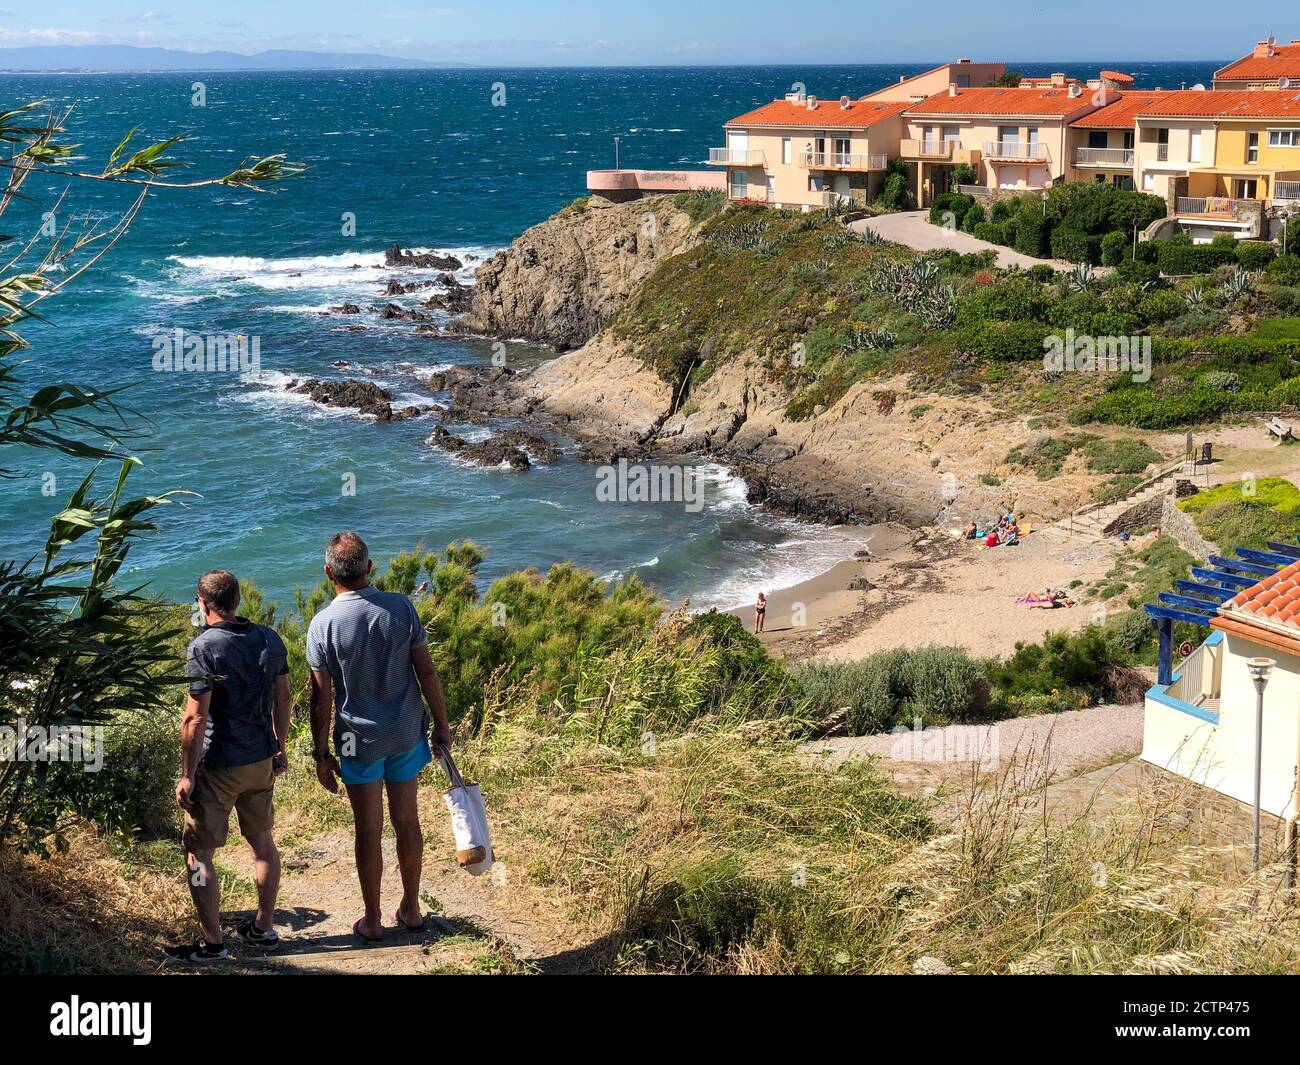 Vacanciers sur une petite plage près des falaises de la mer Méditerranée à Collioure, France. Derrière se trouvent des maisons de vacances avec des toits de tuiles rouges. Banque D'Images